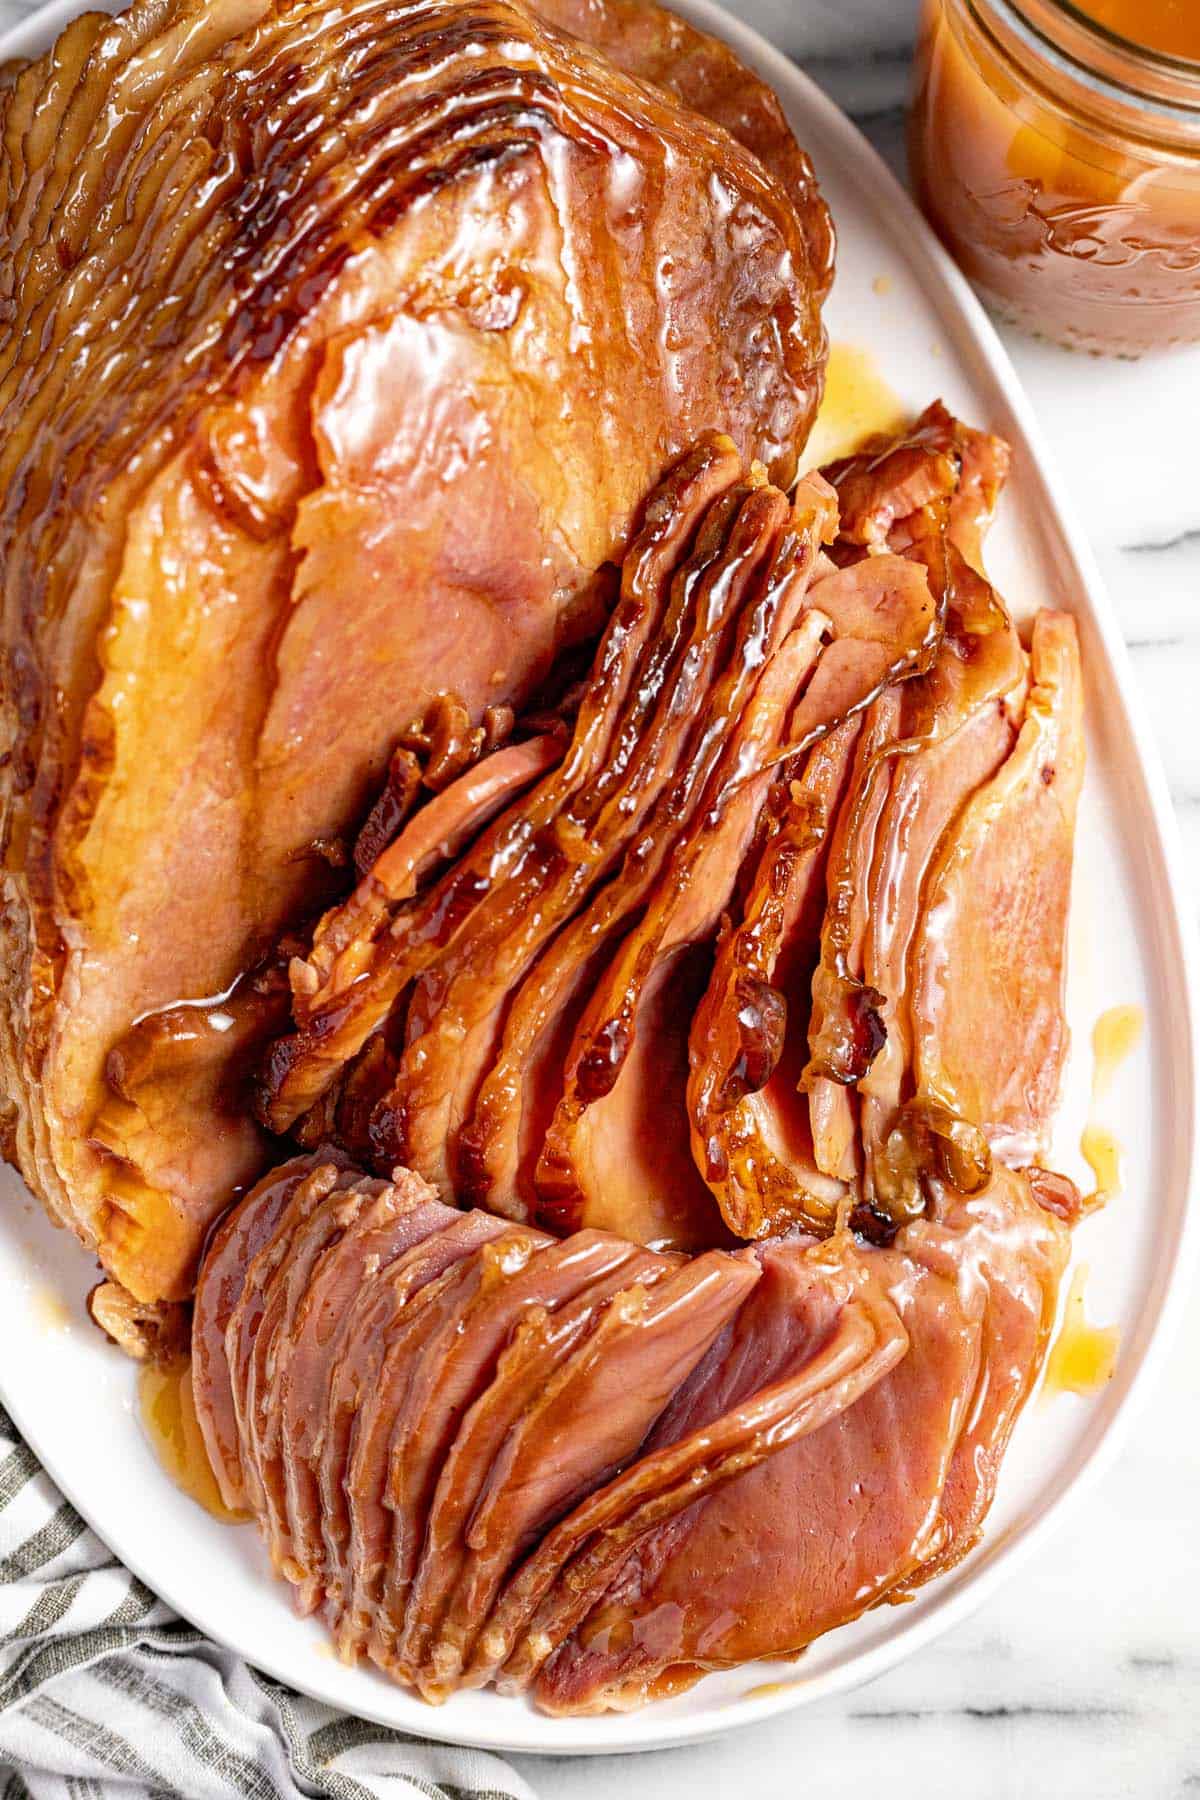 Large spiral cut ham slices brushed with glaze on a large serving platter. 